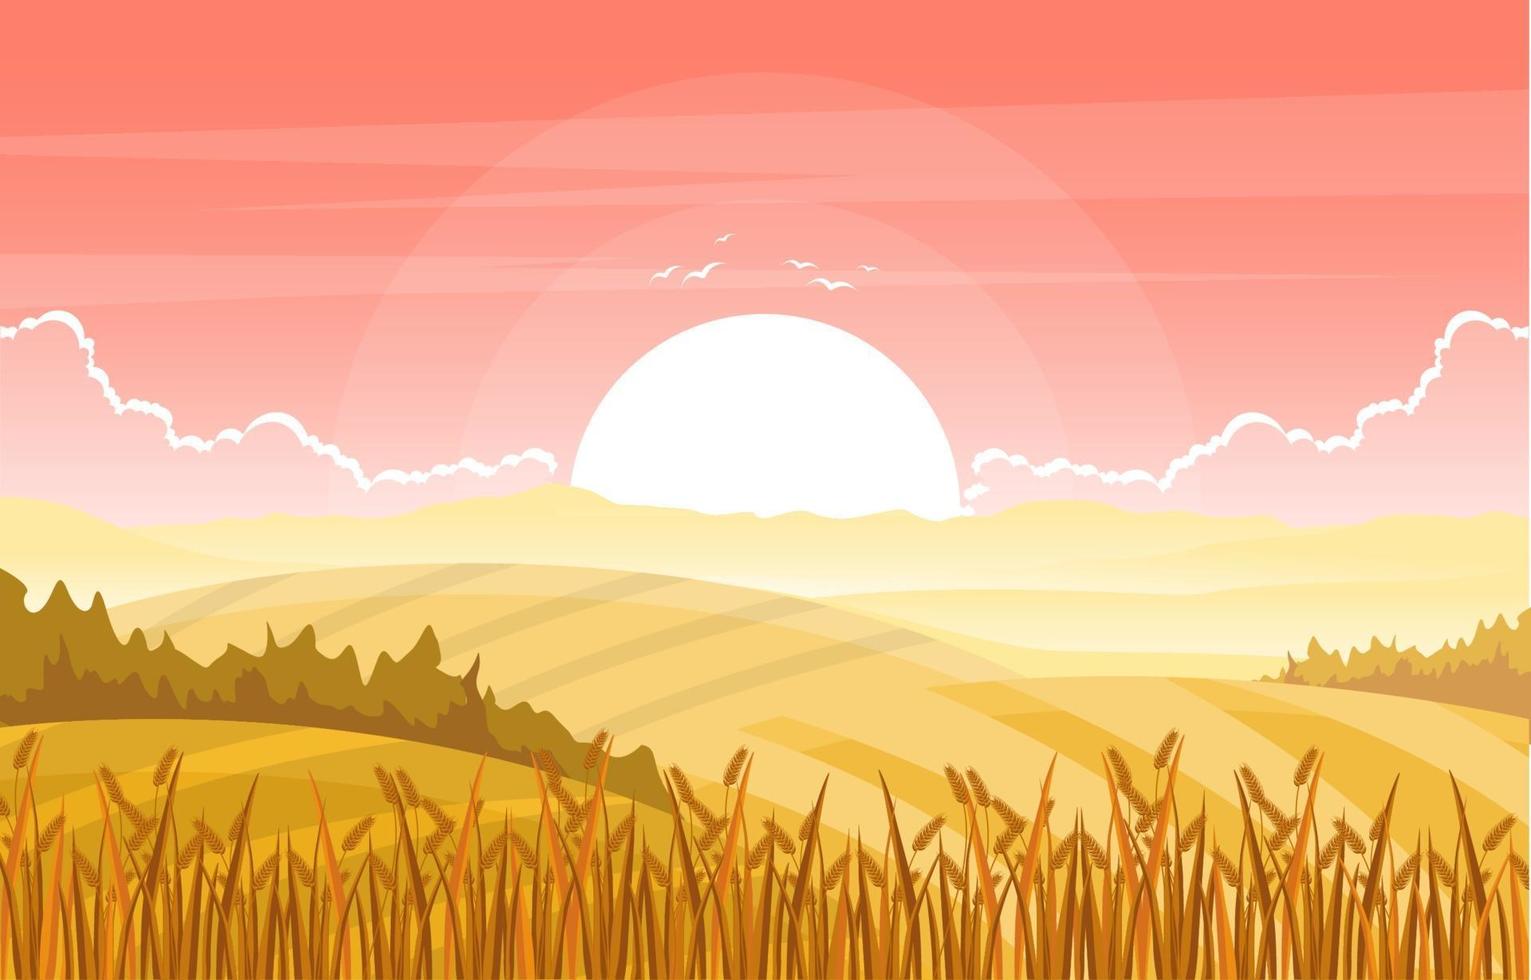 agriculture champ de blé ferme rural nature scène paysage illustration vecteur